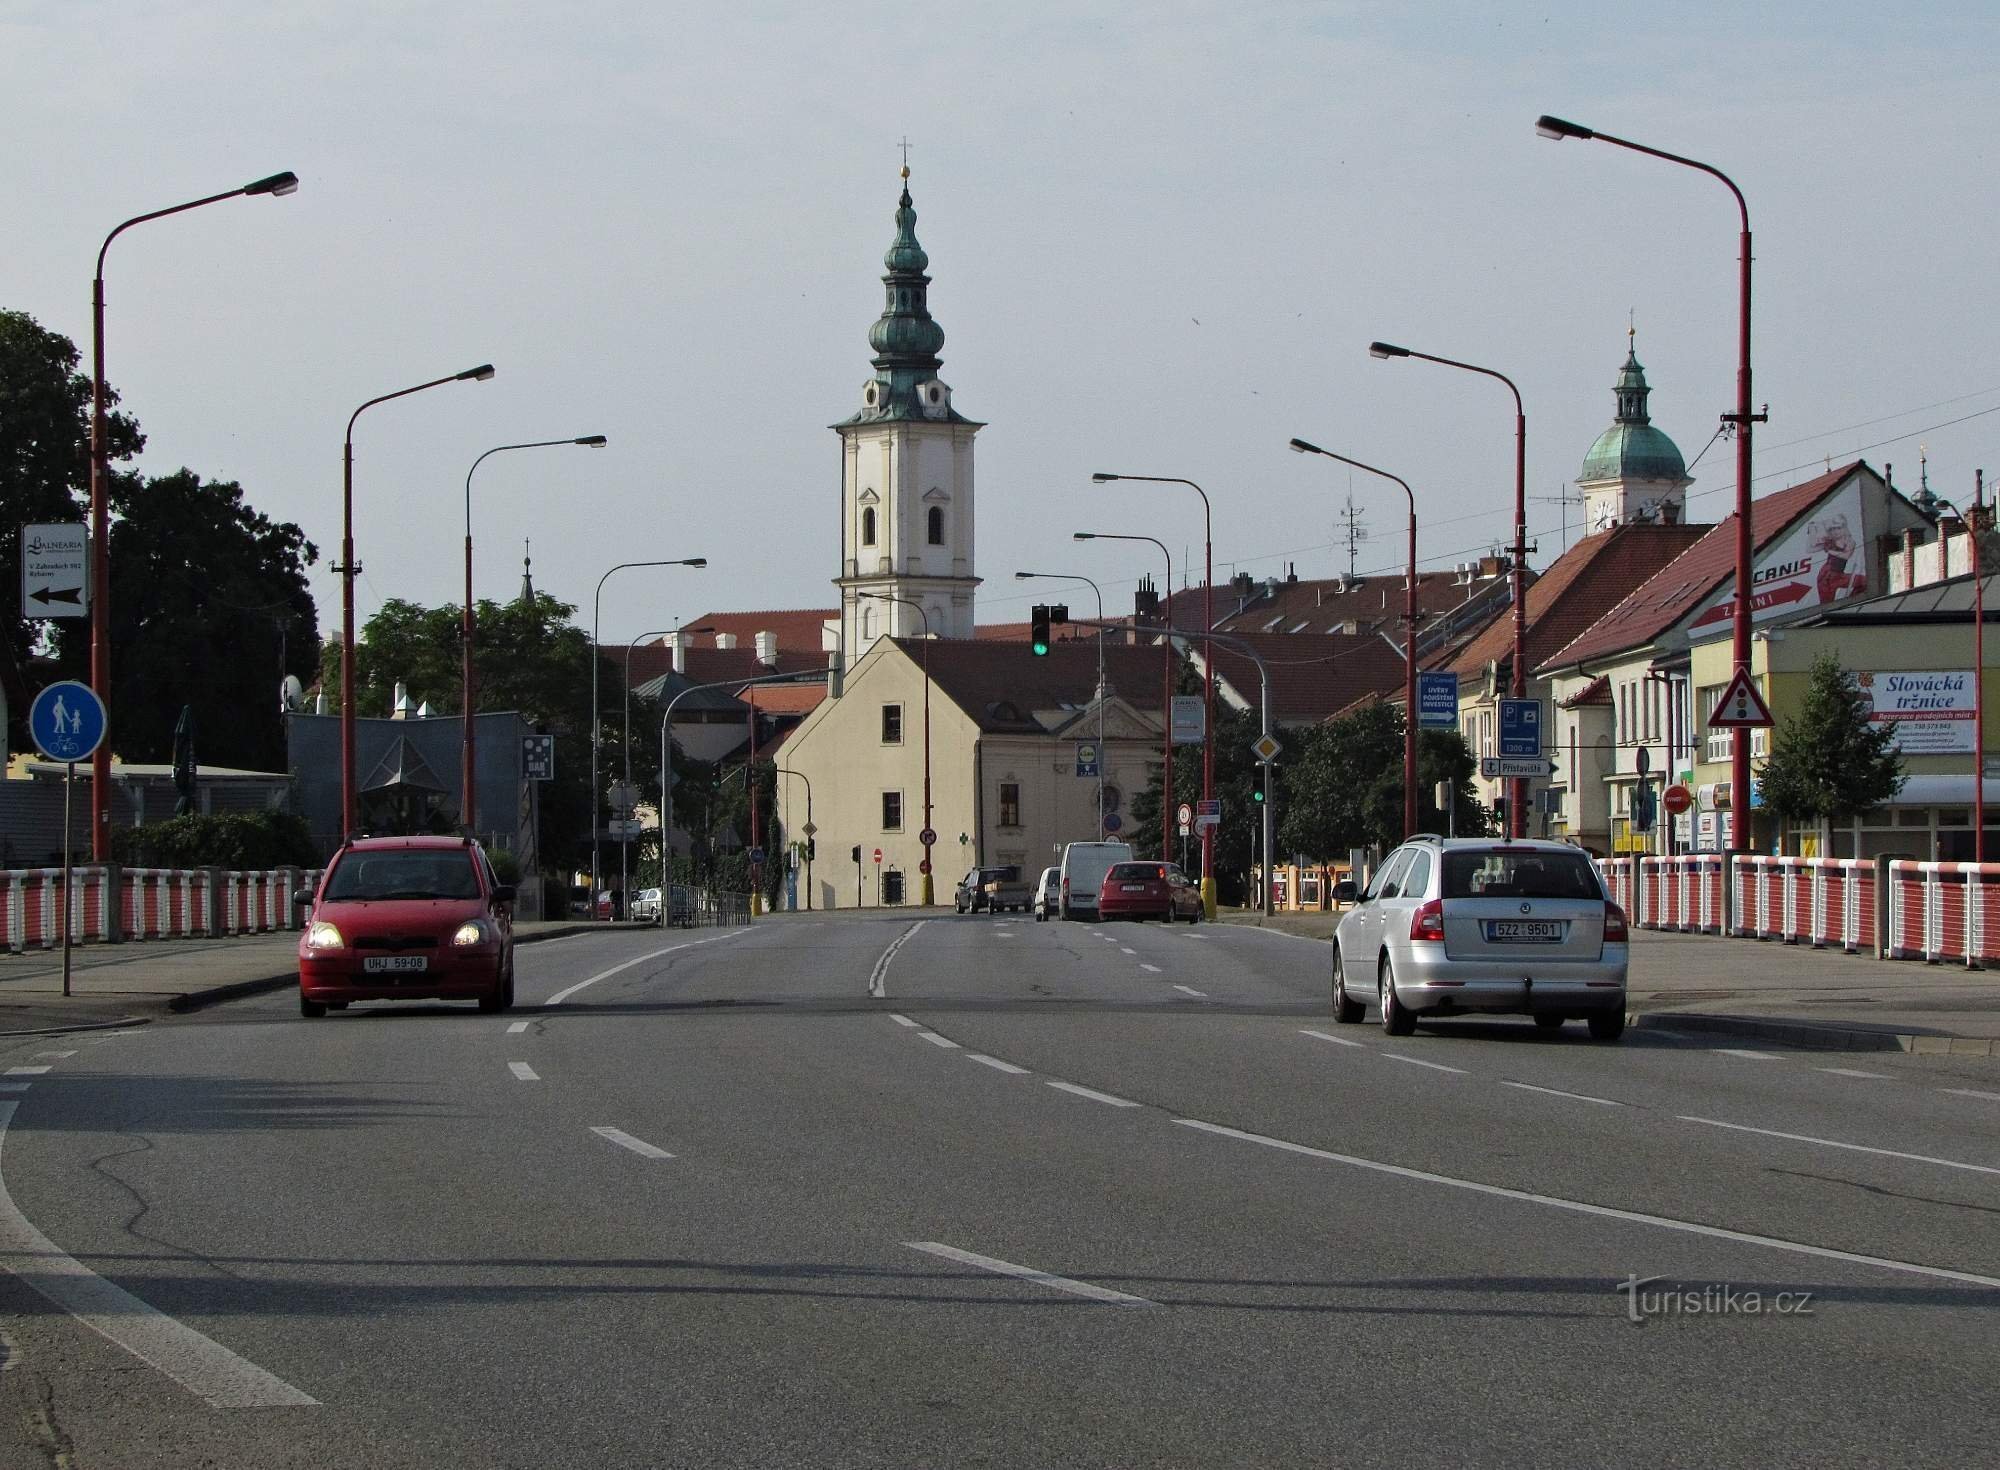 Uherské Hradiště - område af franciskanerklosteret og kirken